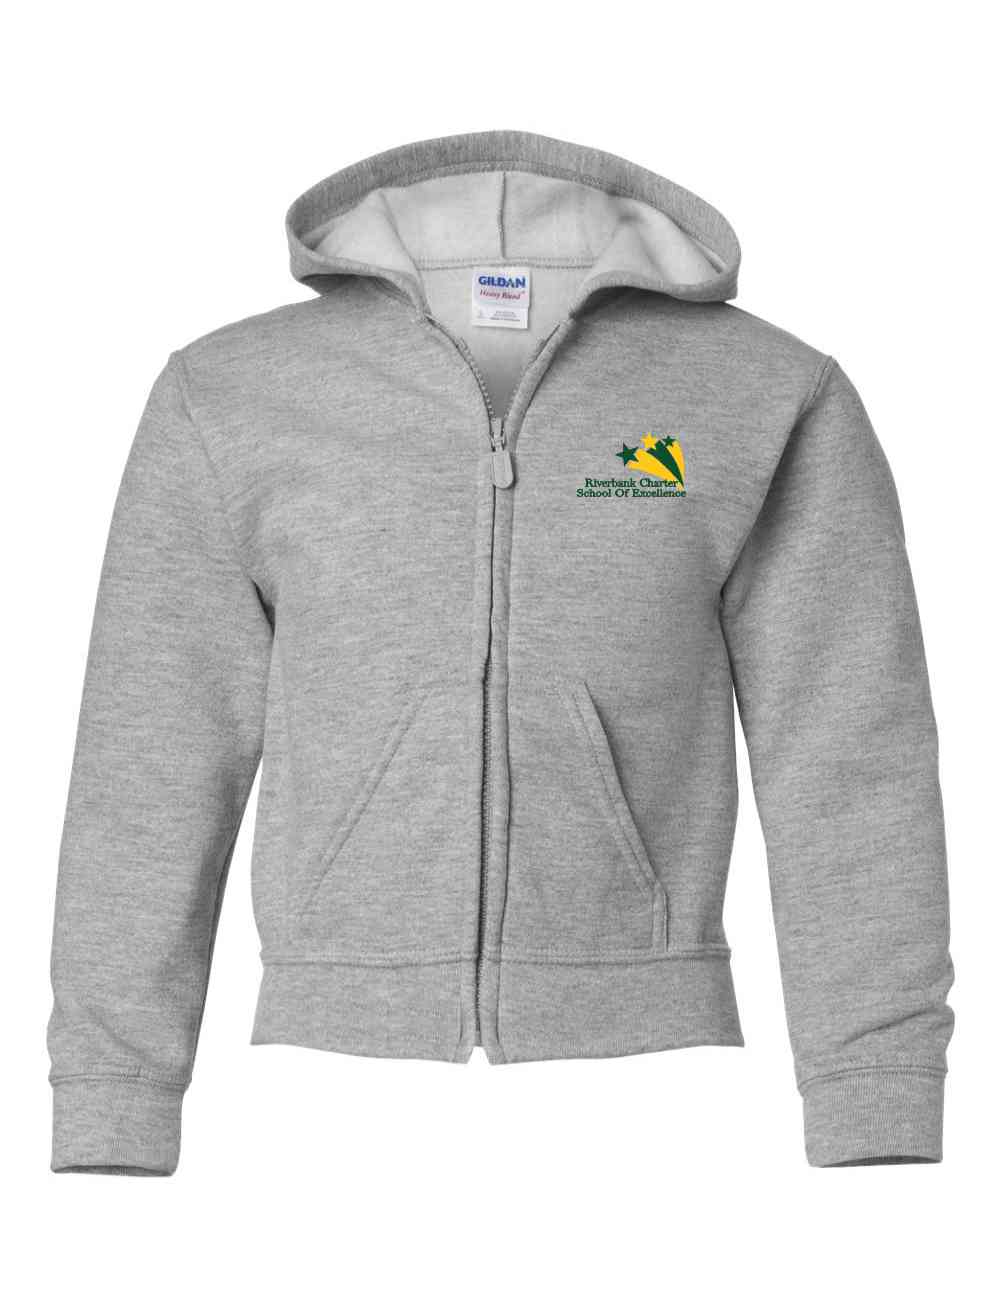 3-18600b Embroidered Gildan Youth  zip hooded sweatshirt